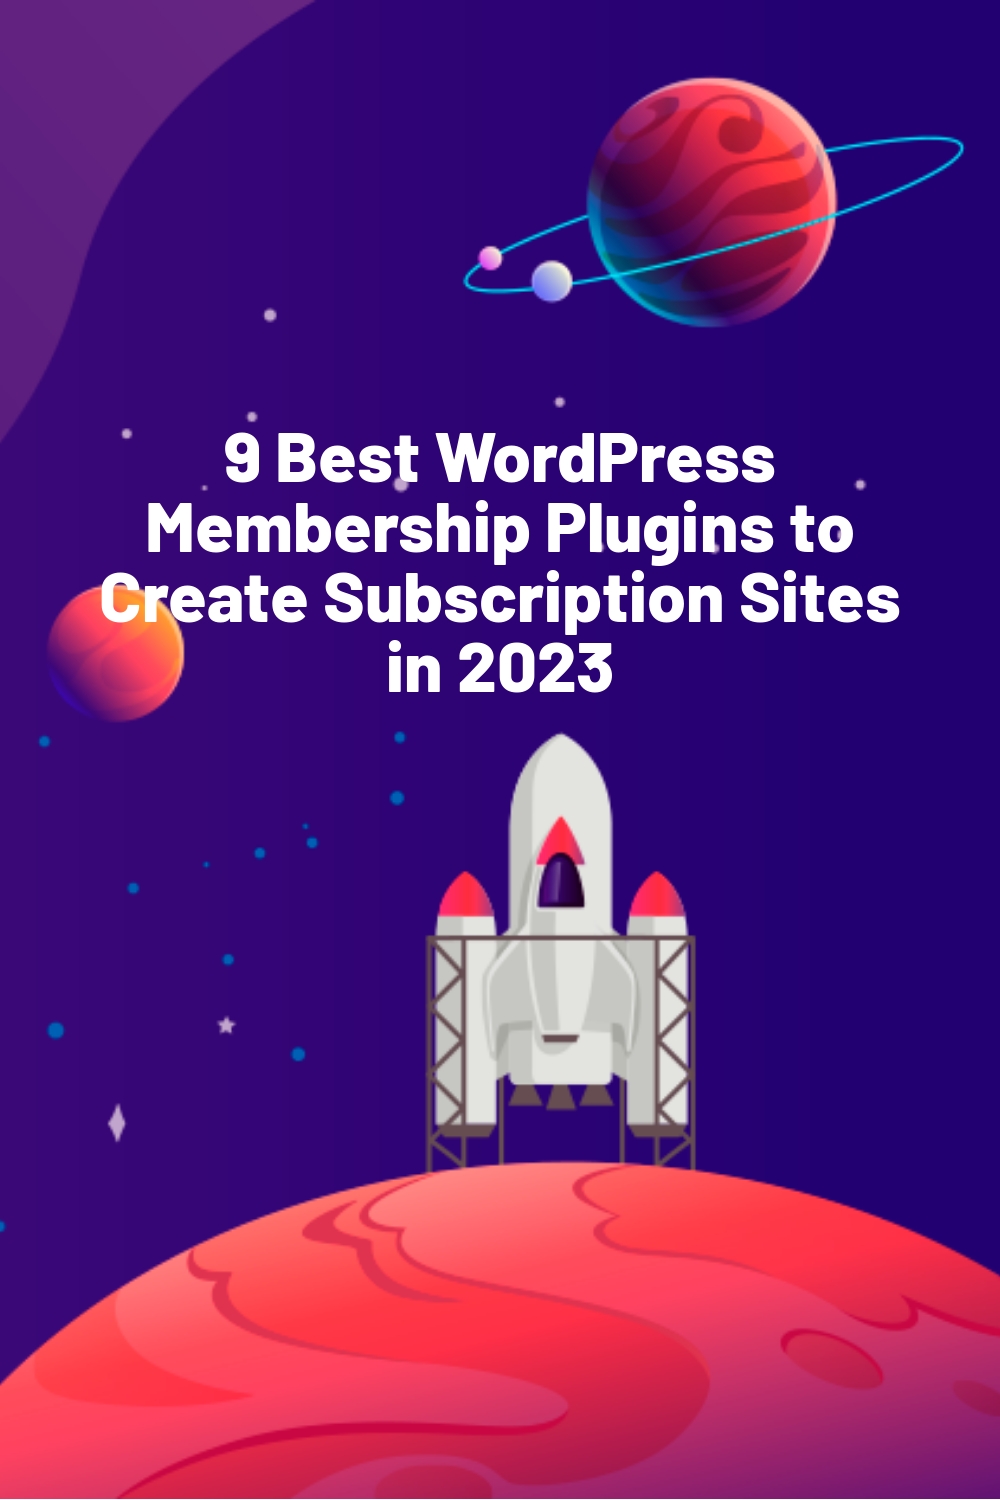 9 Best WordPress Membership Plugins to Create Subscription Sites in 2023